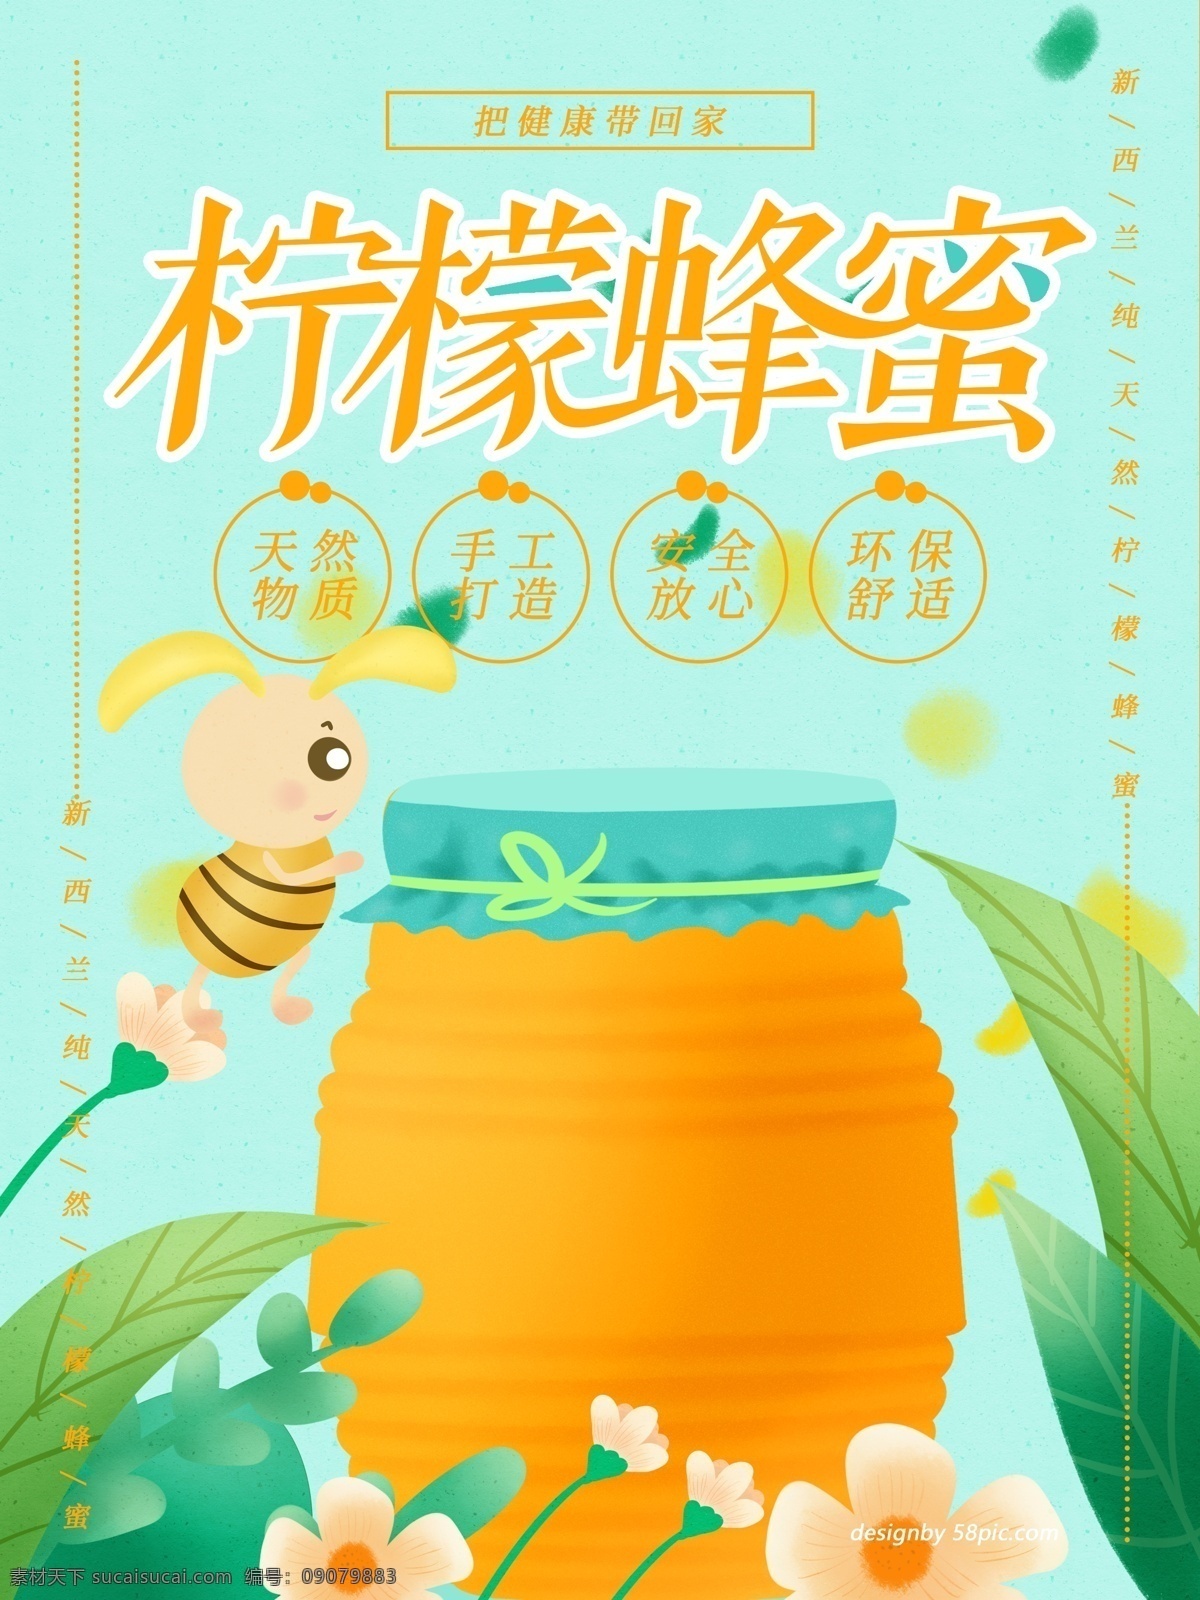 原创 手绘 柠檬 蜂蜜 海报 柠檬蜂蜜 蜂蜜海报 蜜蜂 手绘蜜蜂 小清新 小清新蜂蜜